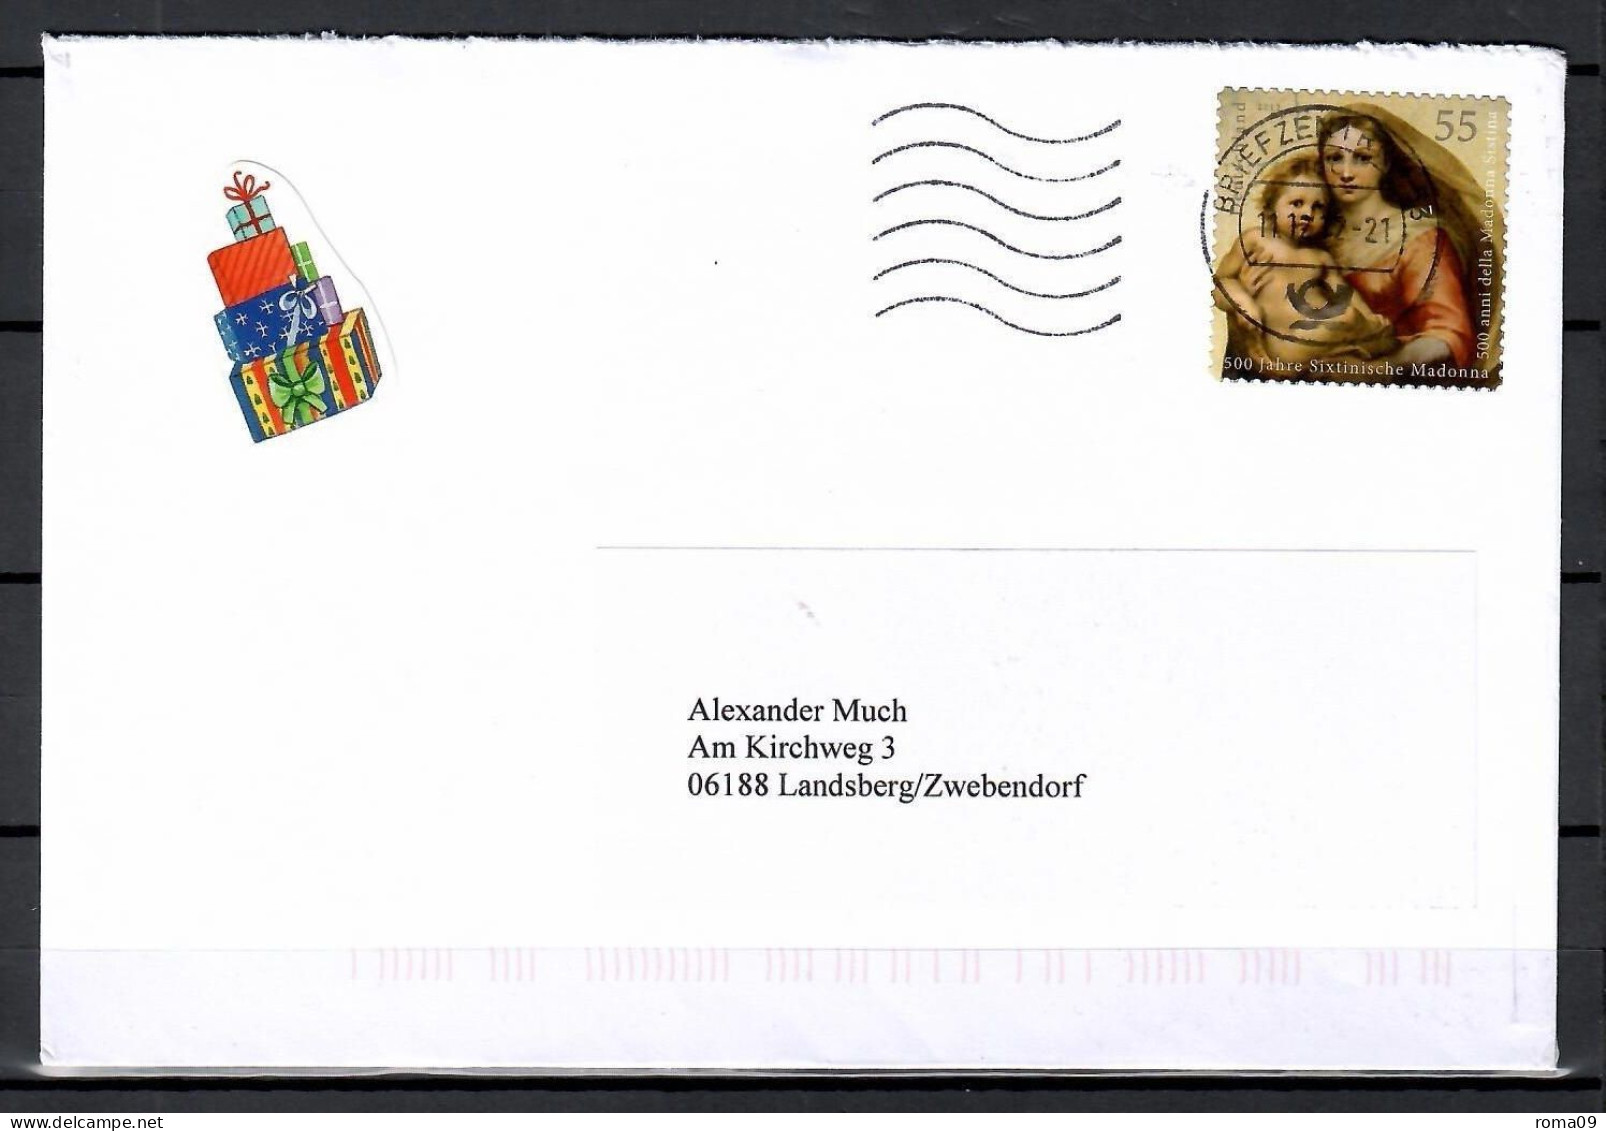 MiNr. 2965; 500 J. Sixtinische Madonna, Auf Portoger. Brief Von BZ 53 Nach Landsberg; E-92 - Briefe U. Dokumente